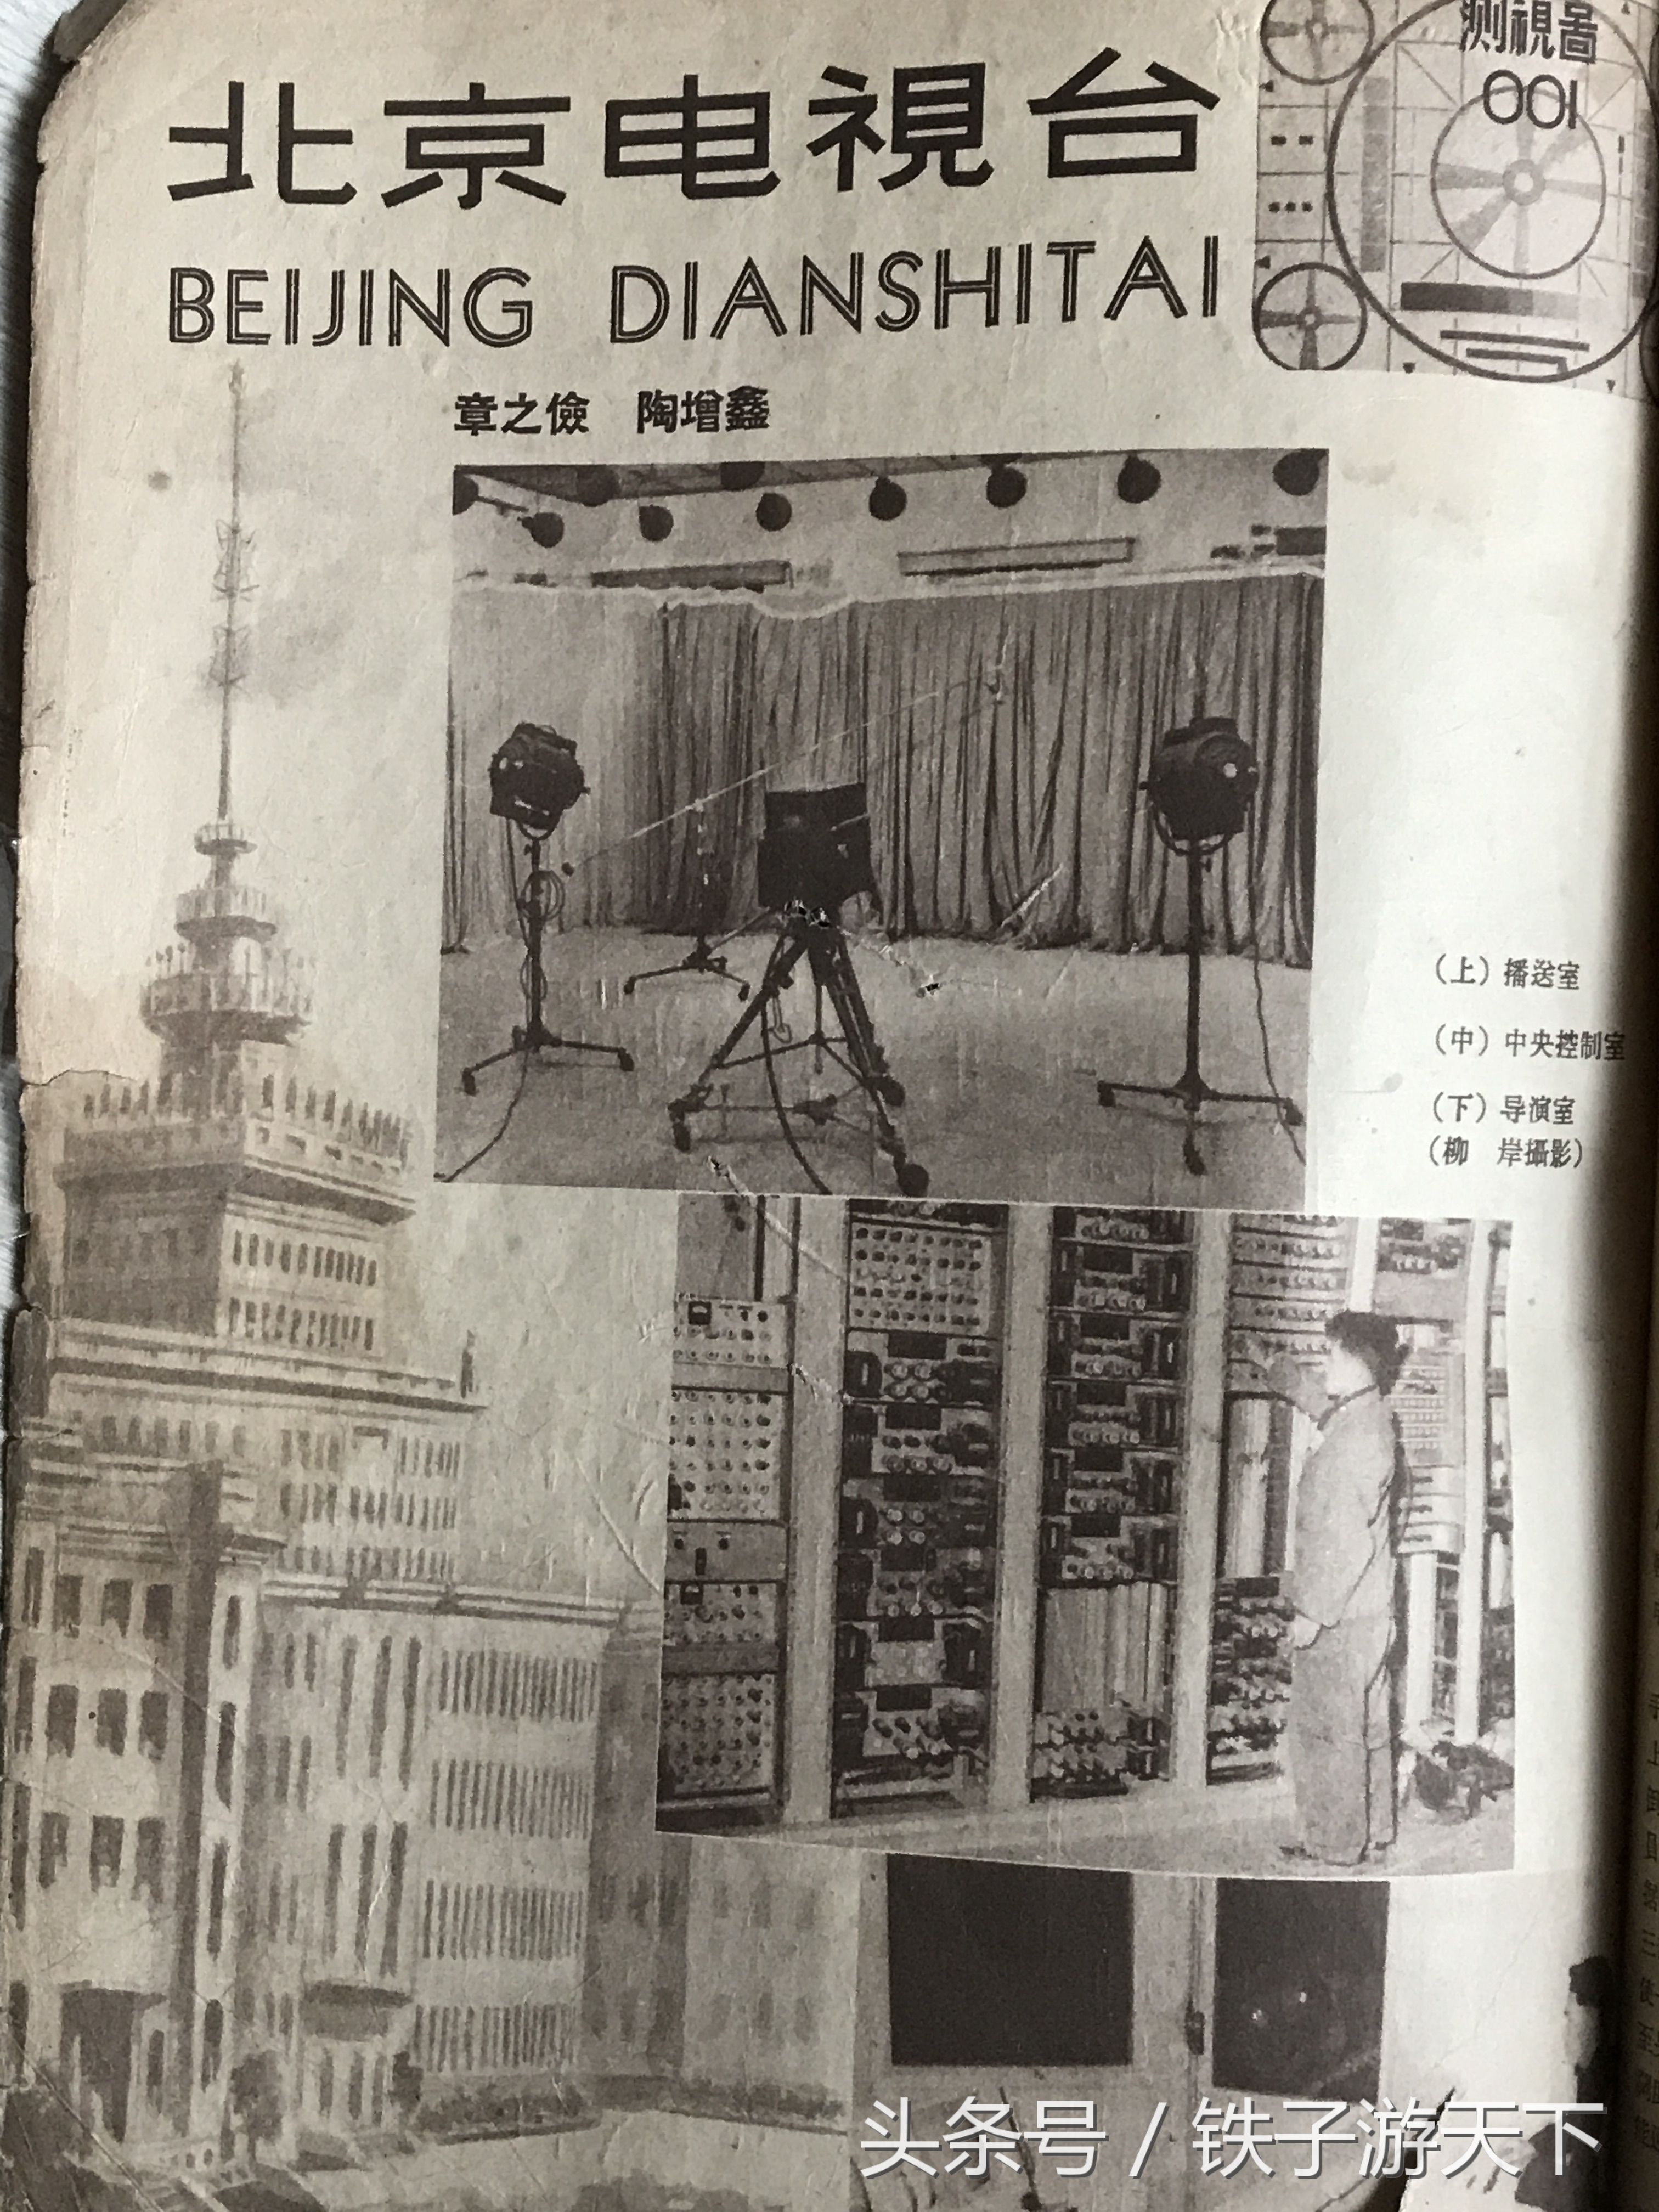 1958年,北京电视台是中央电视台的前身.